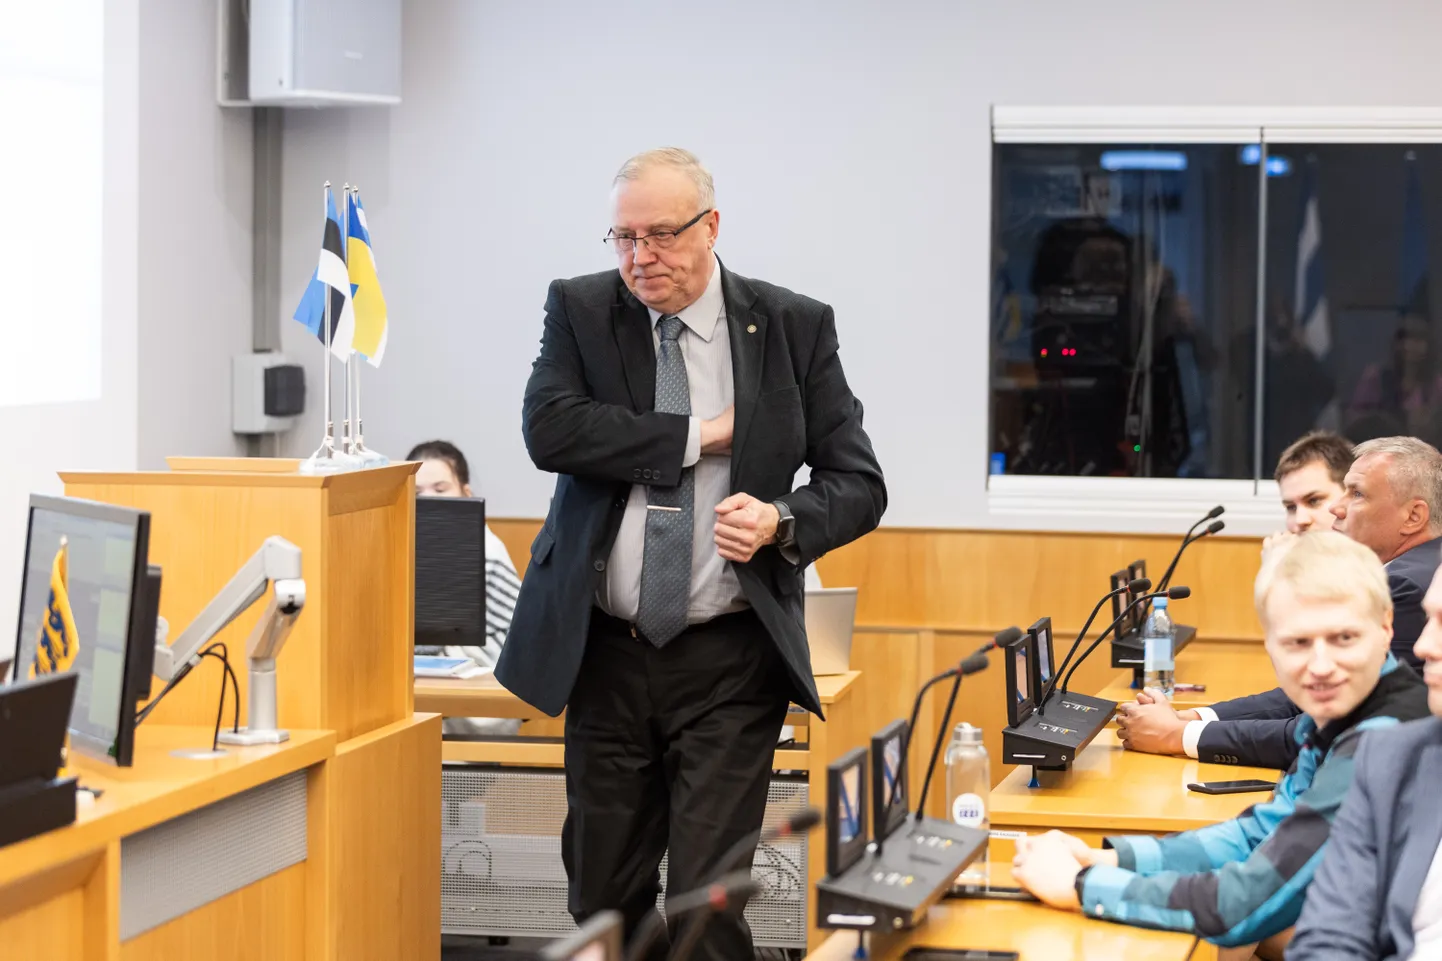 Внеочередное заседание Таллиннской горсобрания, на которой мэру было выражено недоверие. Март Каллас.